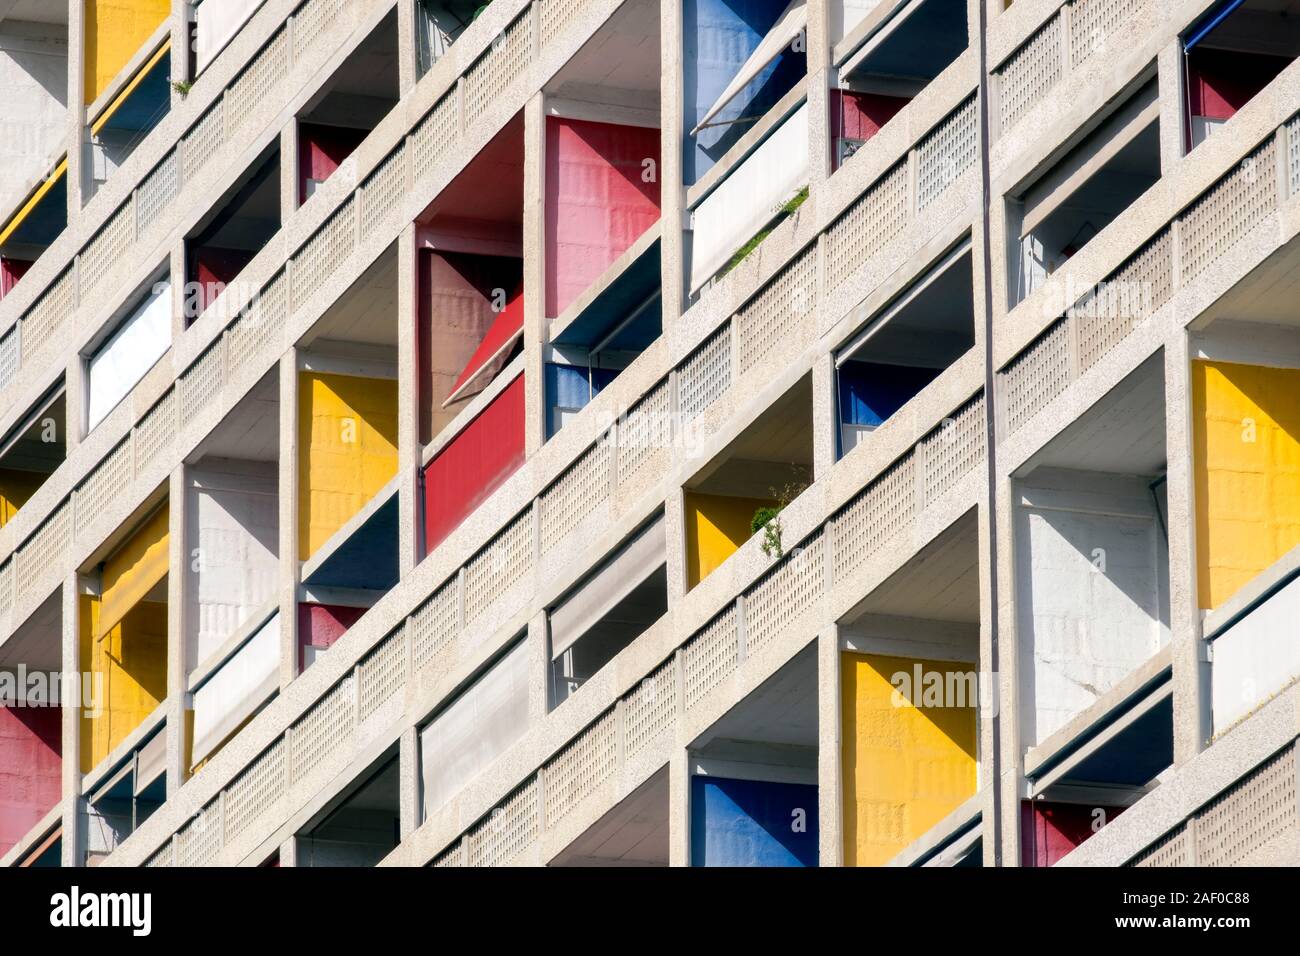 Colourful / colorful balconies, Cité Radieuse or Unité d'Habitation by Le Corbusier, Marseille, Provence, France, Europe Stock Photo